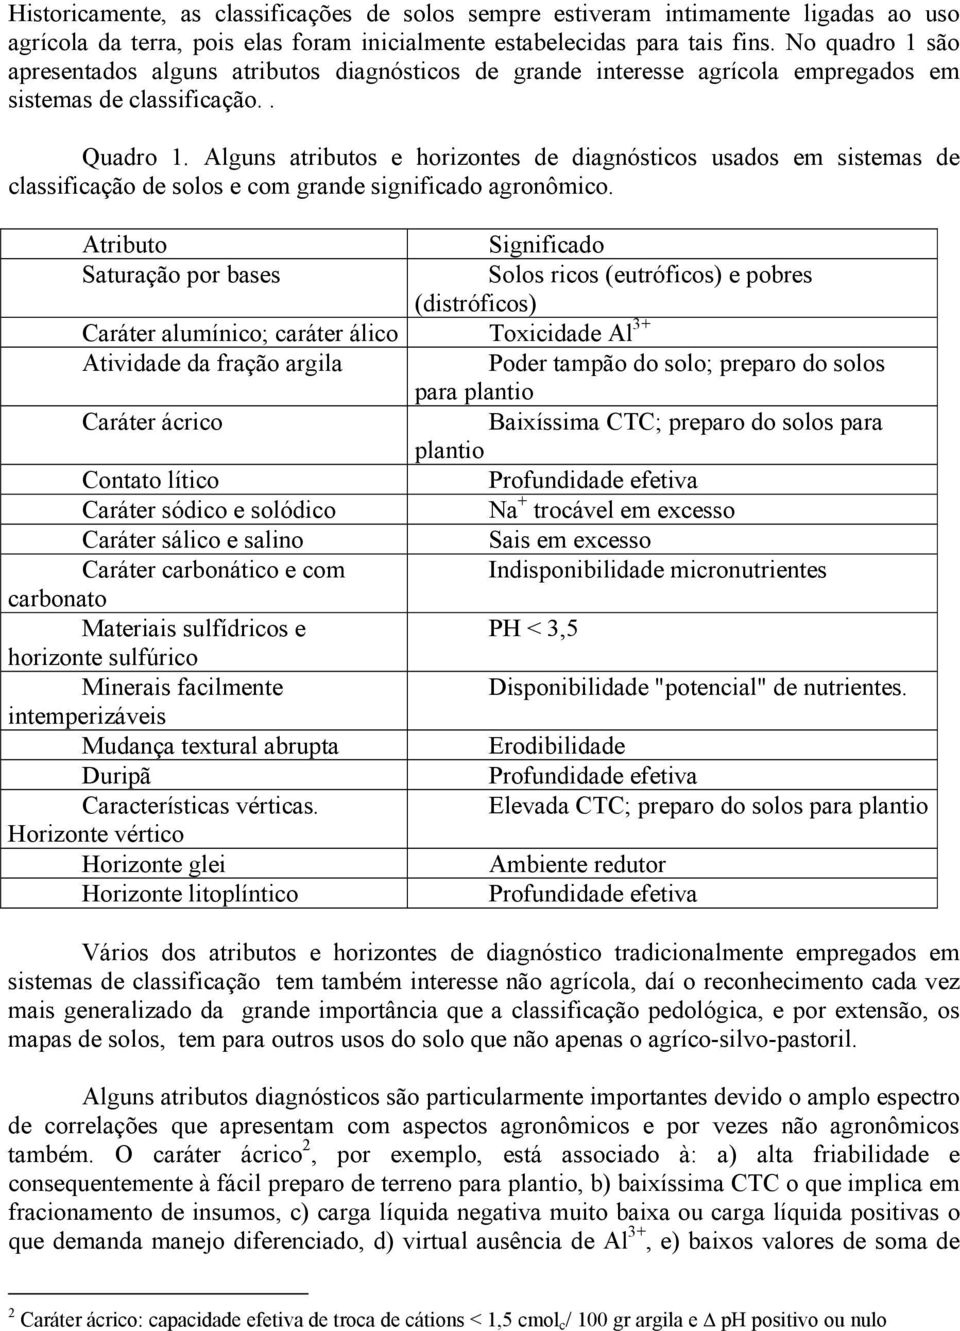 Alguns atributos e horizontes de diagnósticos usados em sistemas de classificação de solos e com grande significado agronômico.